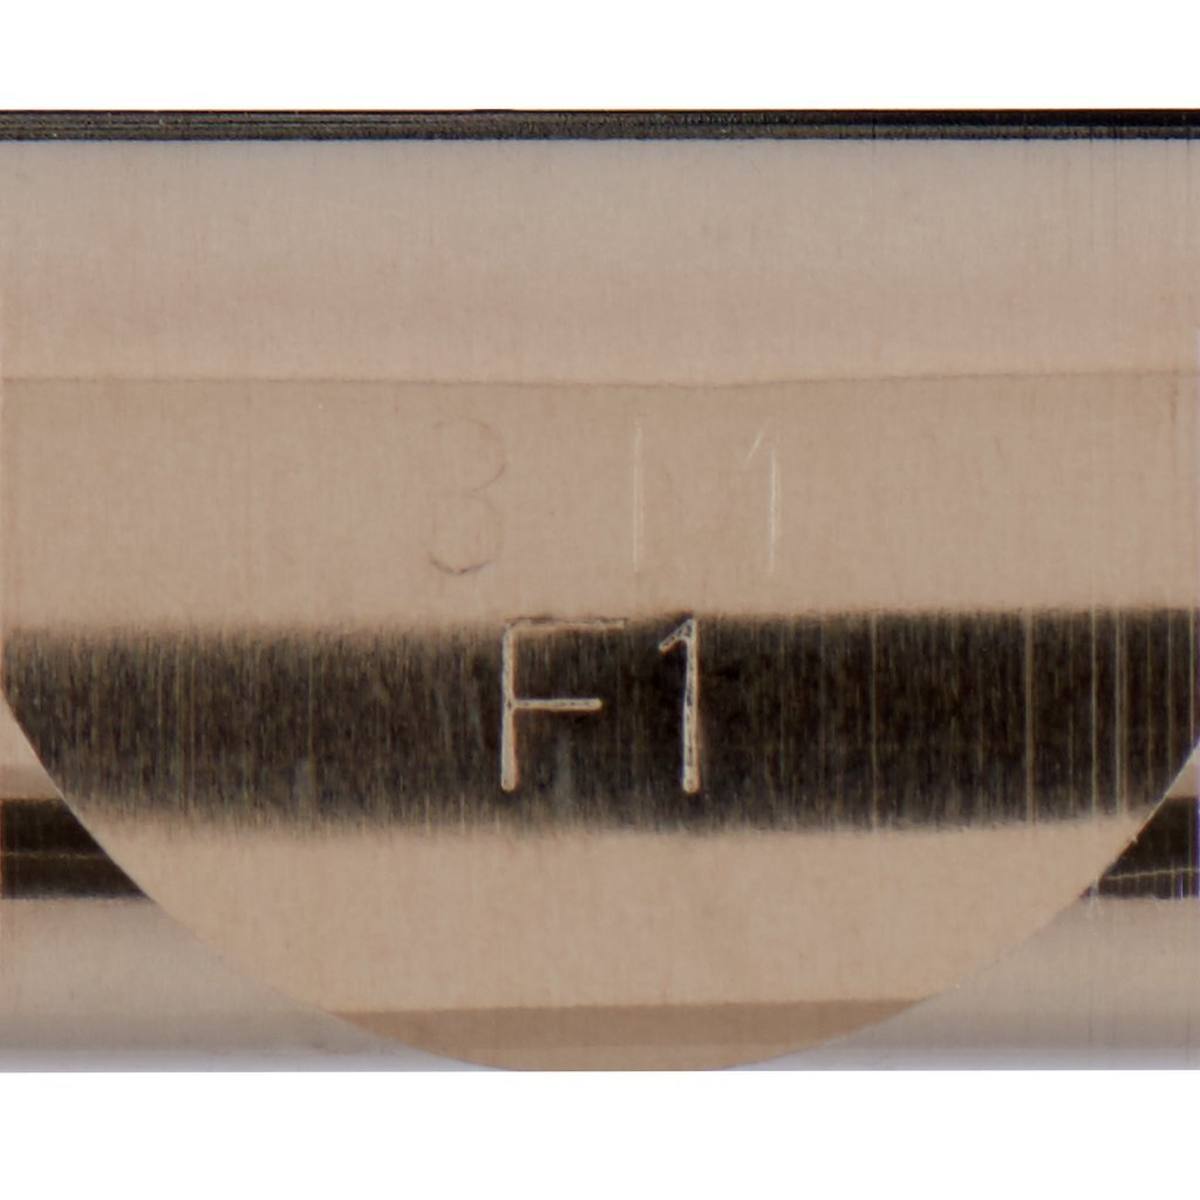 3M P61 Kontakt-Rollfeder für lötfreie Verbindungen, 14 - 22 mm